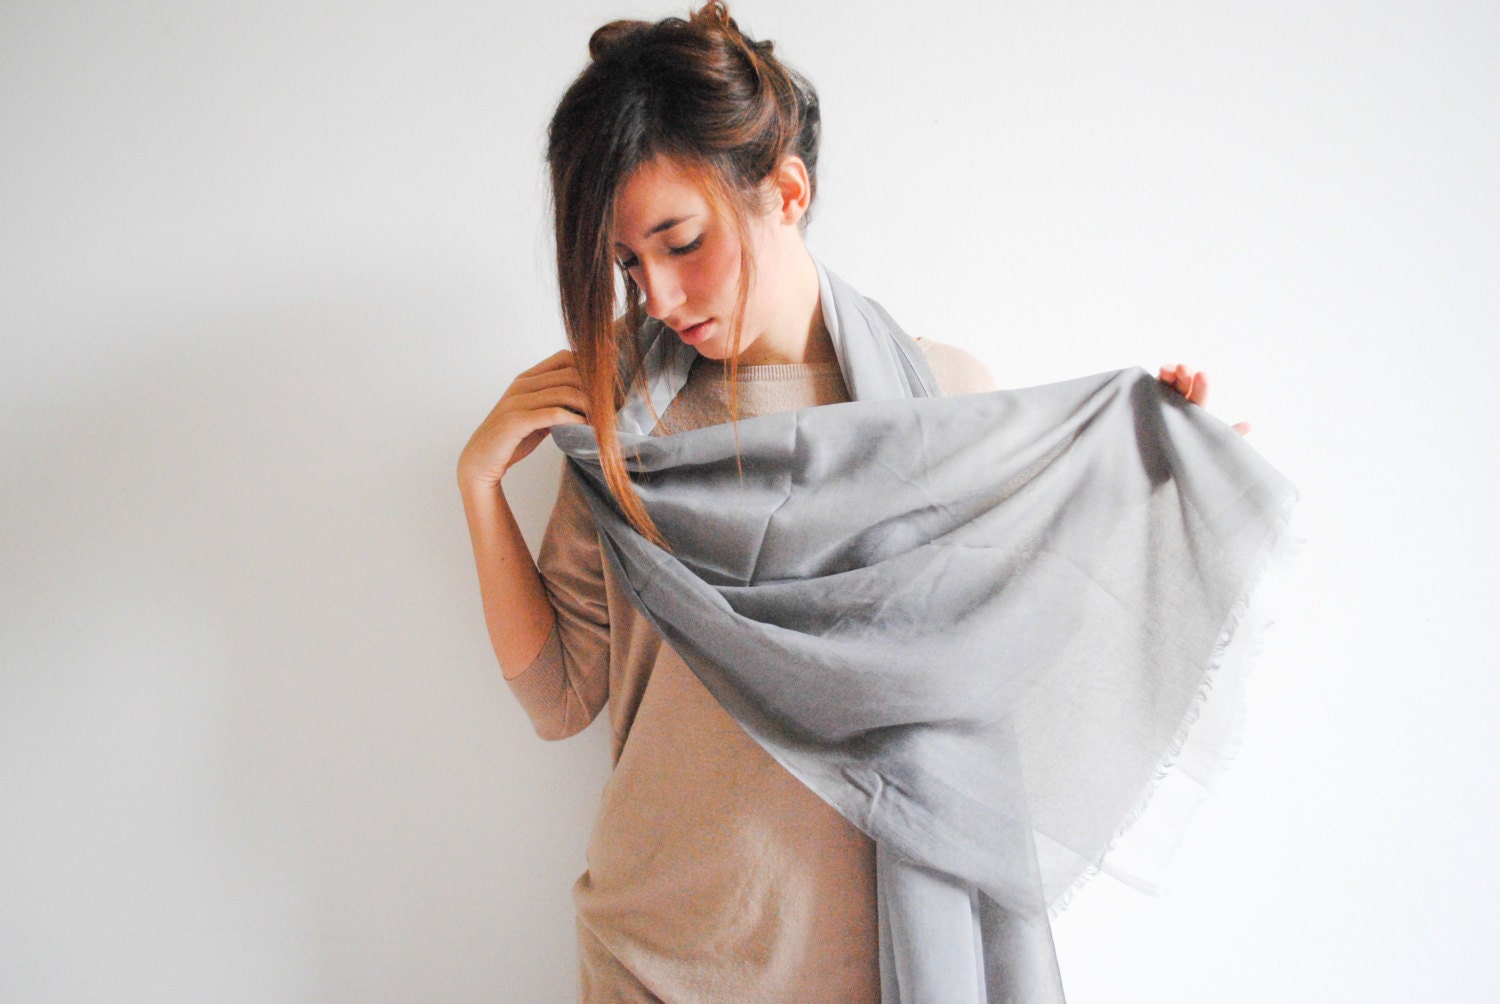 Gray Cotton Scarf - Women's Fashion Accessories - Women Scarves - Fall women scarf - Long Neck Scarf - NadjasMovingCastle